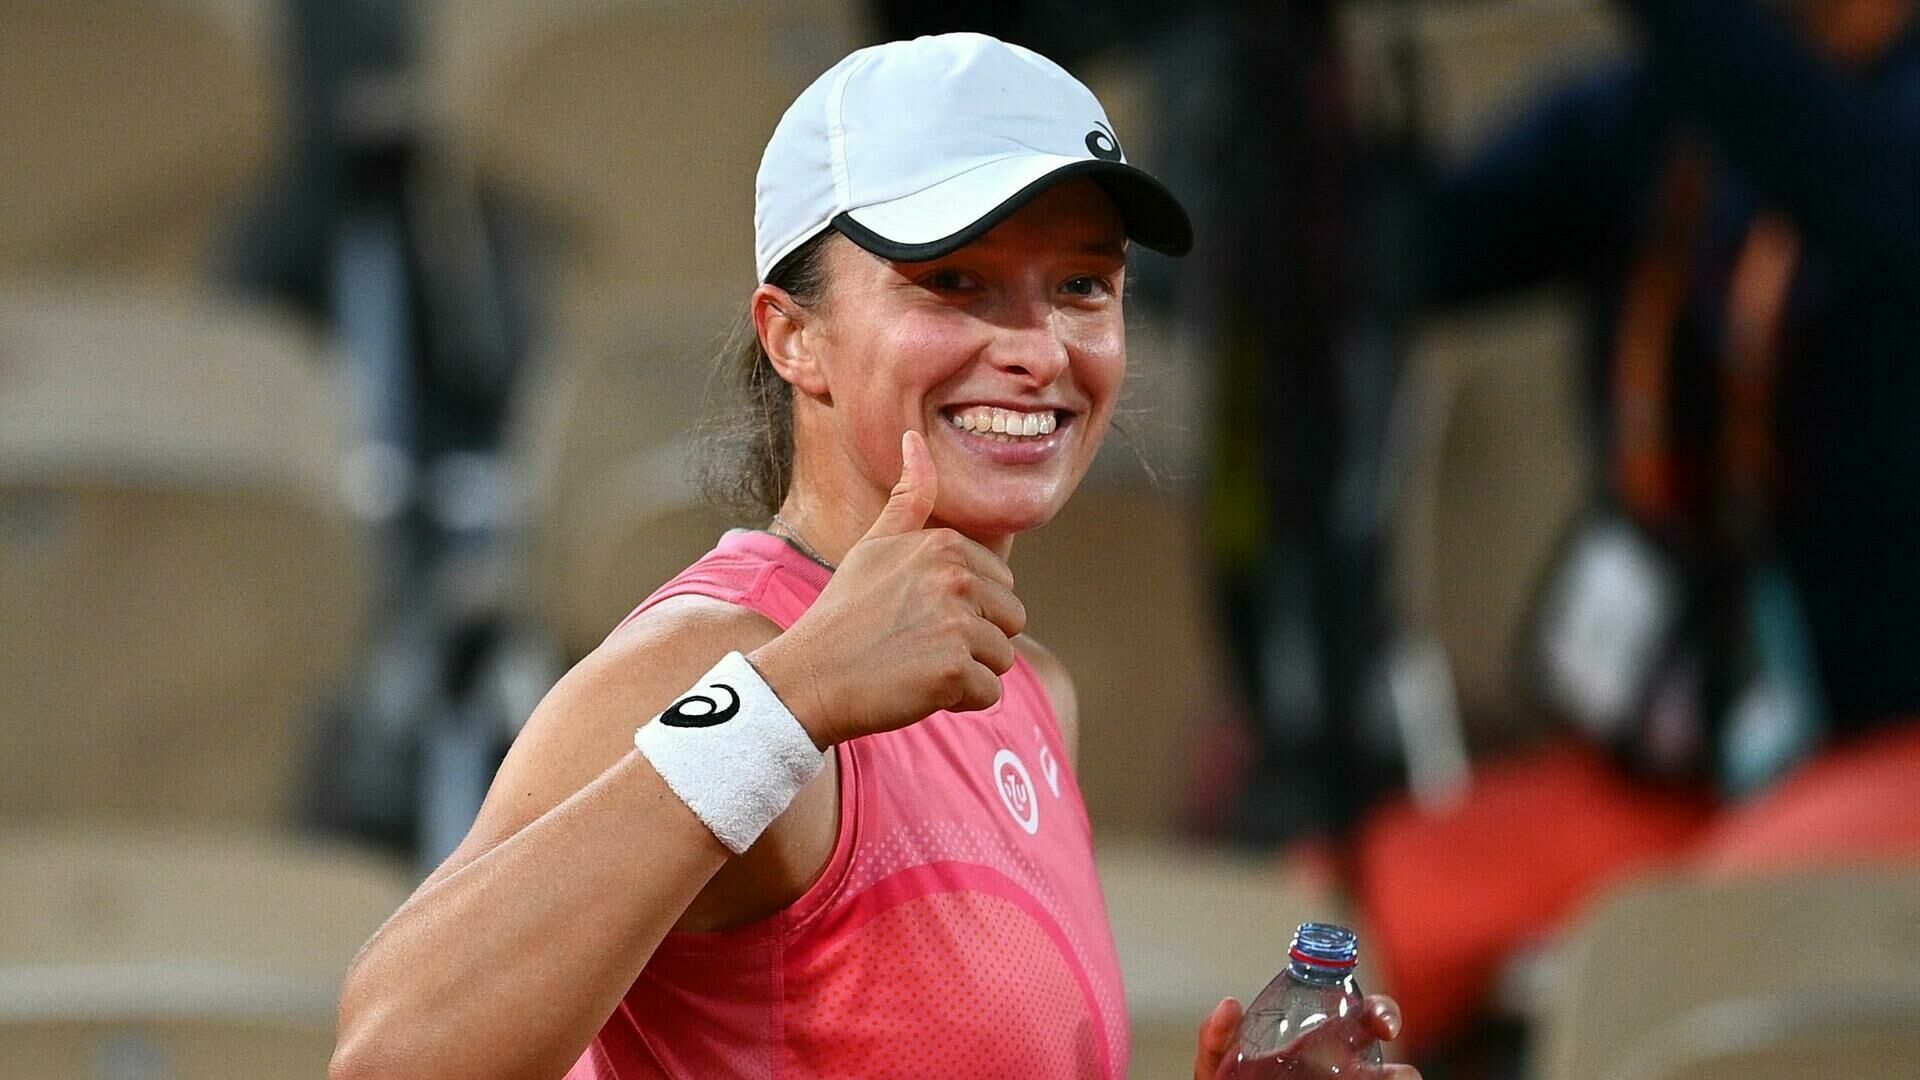 Польская теннисистка Ига Швентек возглавила рейтинг Женской теннисной ассоциации